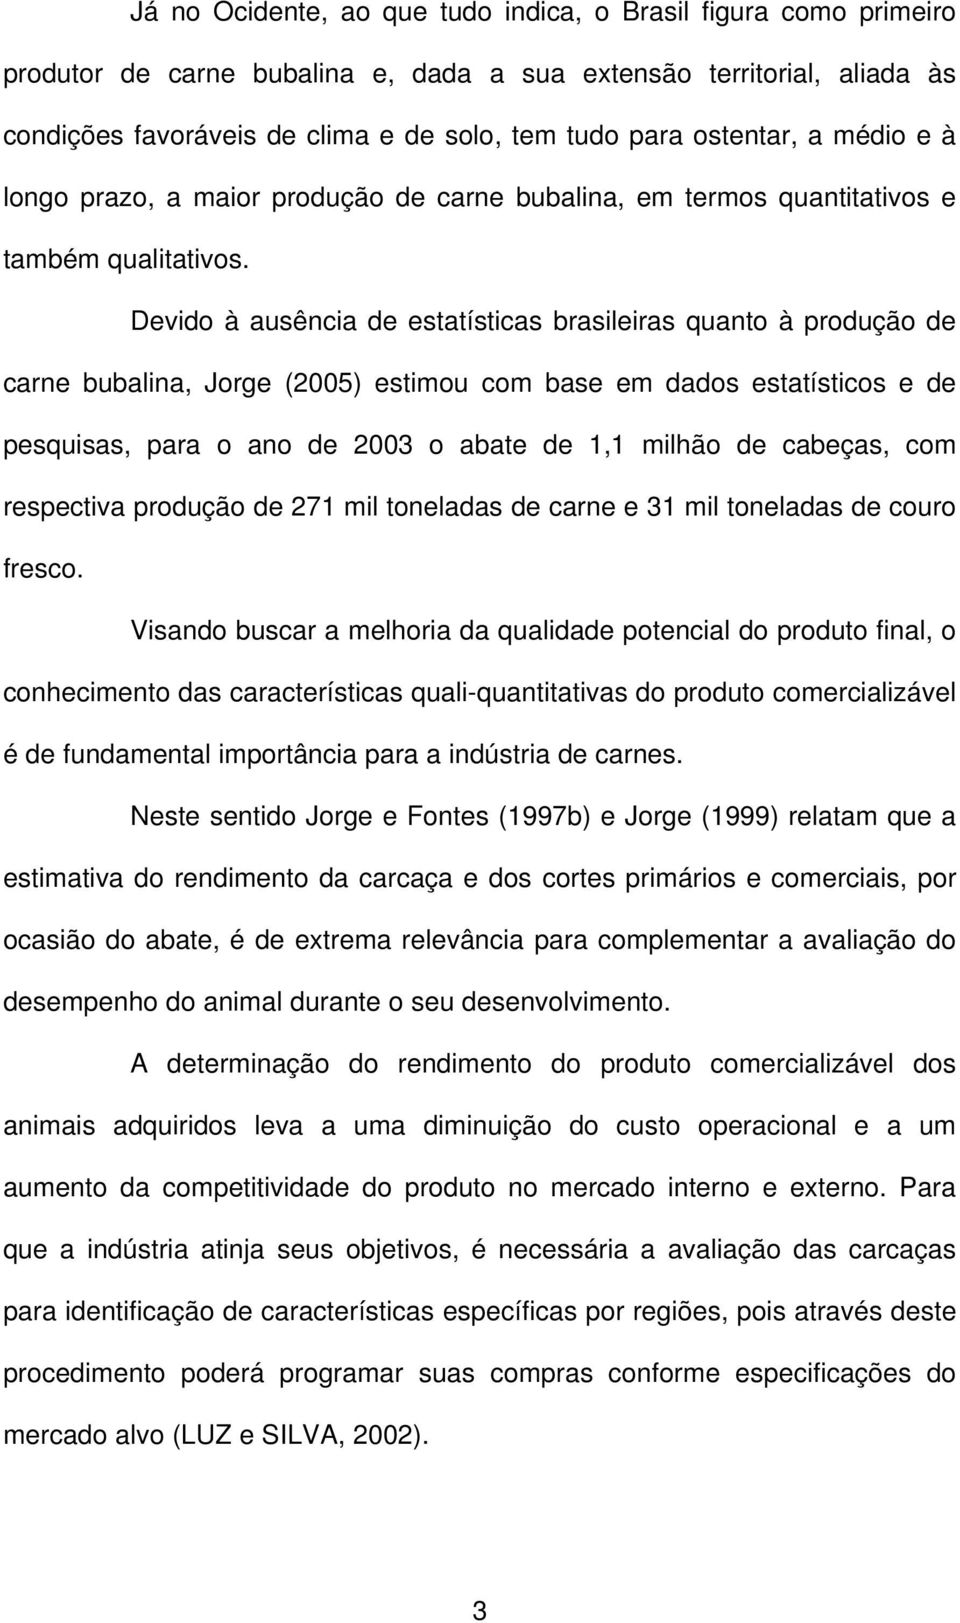 Devido à ausência de estatísticas brasileiras quanto à produção de carne bubalina, Jorge (2005) estimou com base em dados estatísticos e de pesquisas, para o ano de 2003 o abate de 1,1 milhão de